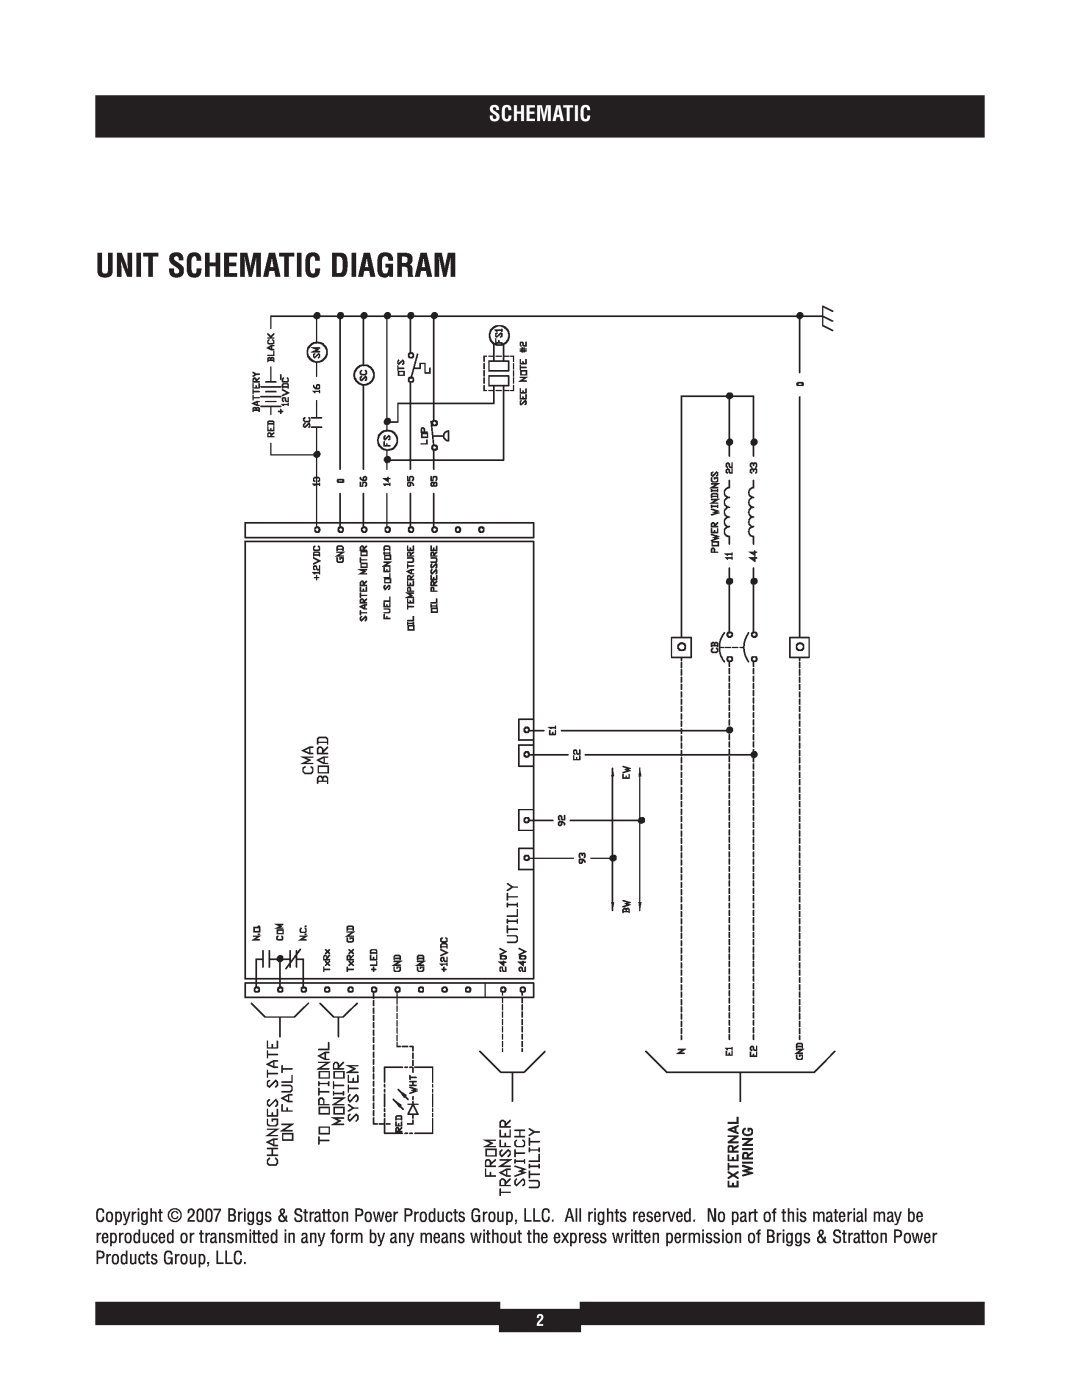 Briggs & Stratton 040229-1 manual Unit Schematic Diagram 